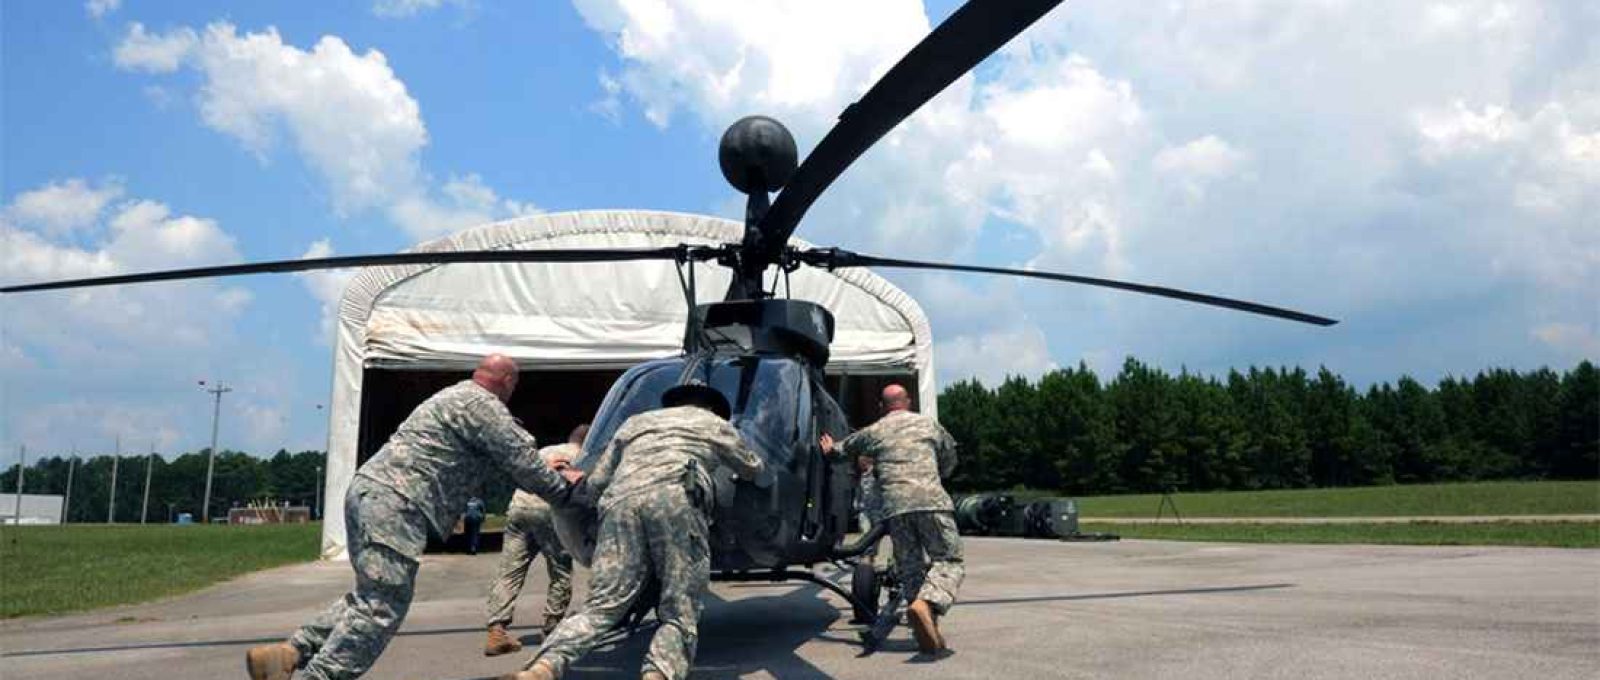 Helicóptero Kiowa excedente armazenado no Redstone Arsenal Airfield, Alabama, julho de 2015 (Michelle Miller/Exército dos EUA).